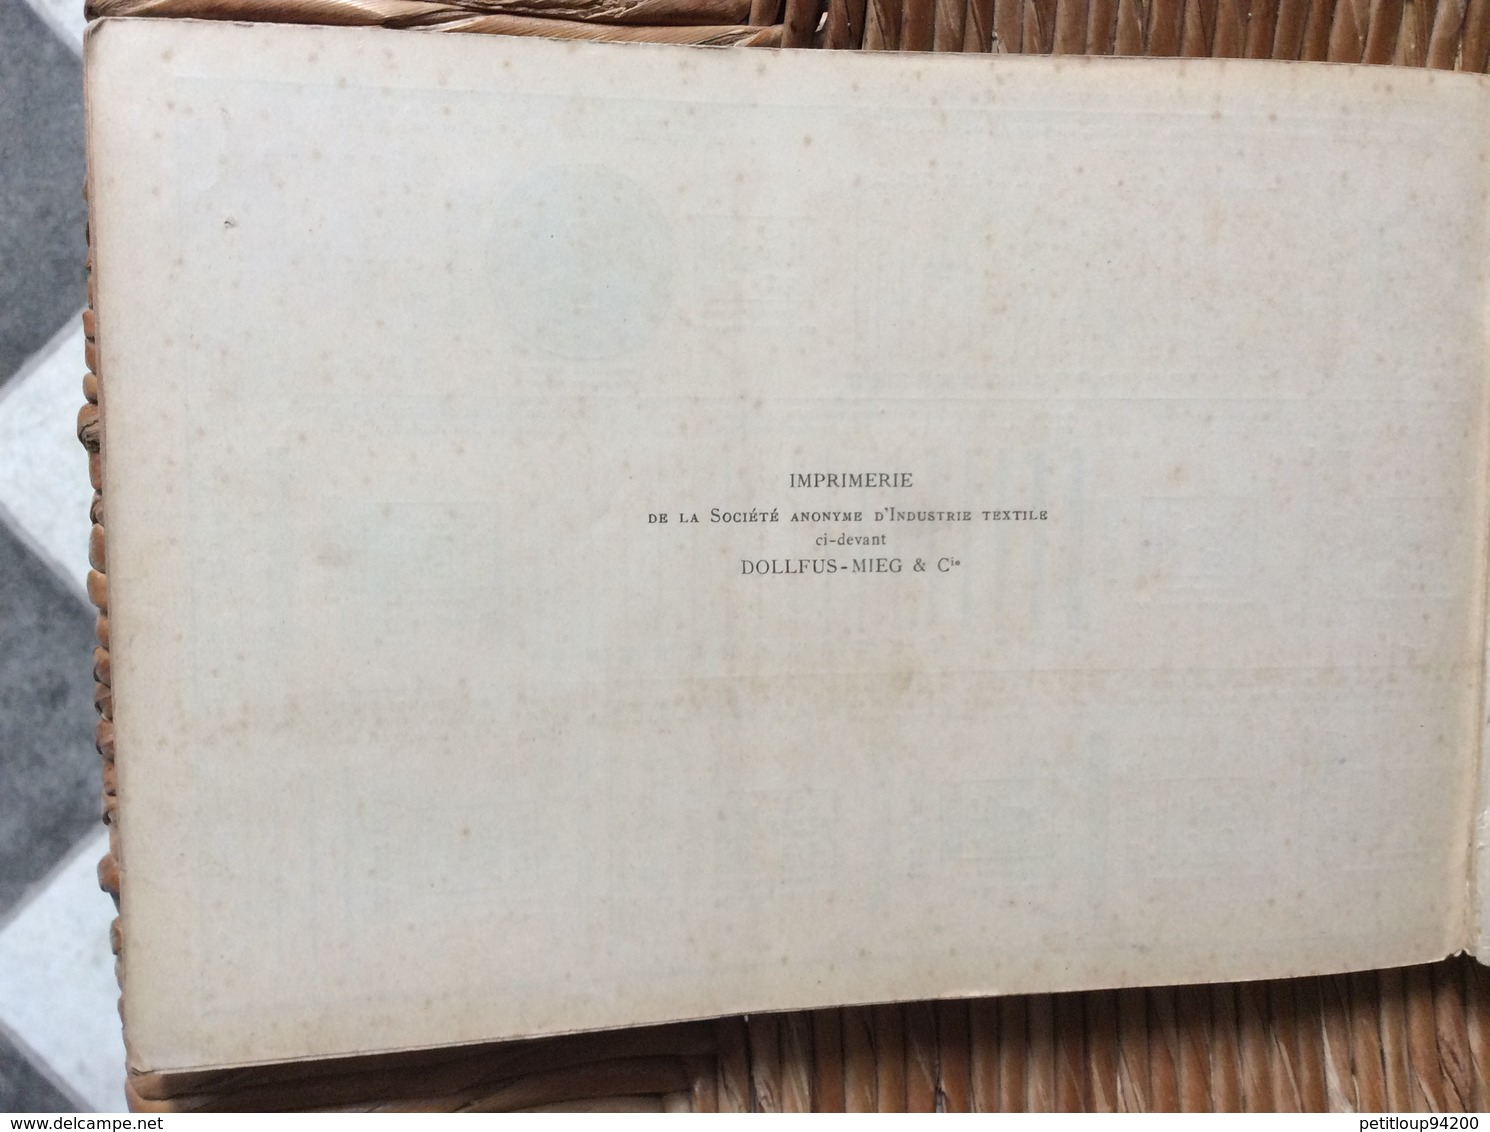 ALPHABET DE LA BRODEUSE Lettres,Chjffres,Monogrammes et Ornements BIBLIOTHÈQUE D.M.C  TH. de Dillmont ÉDITEUR  Dornach